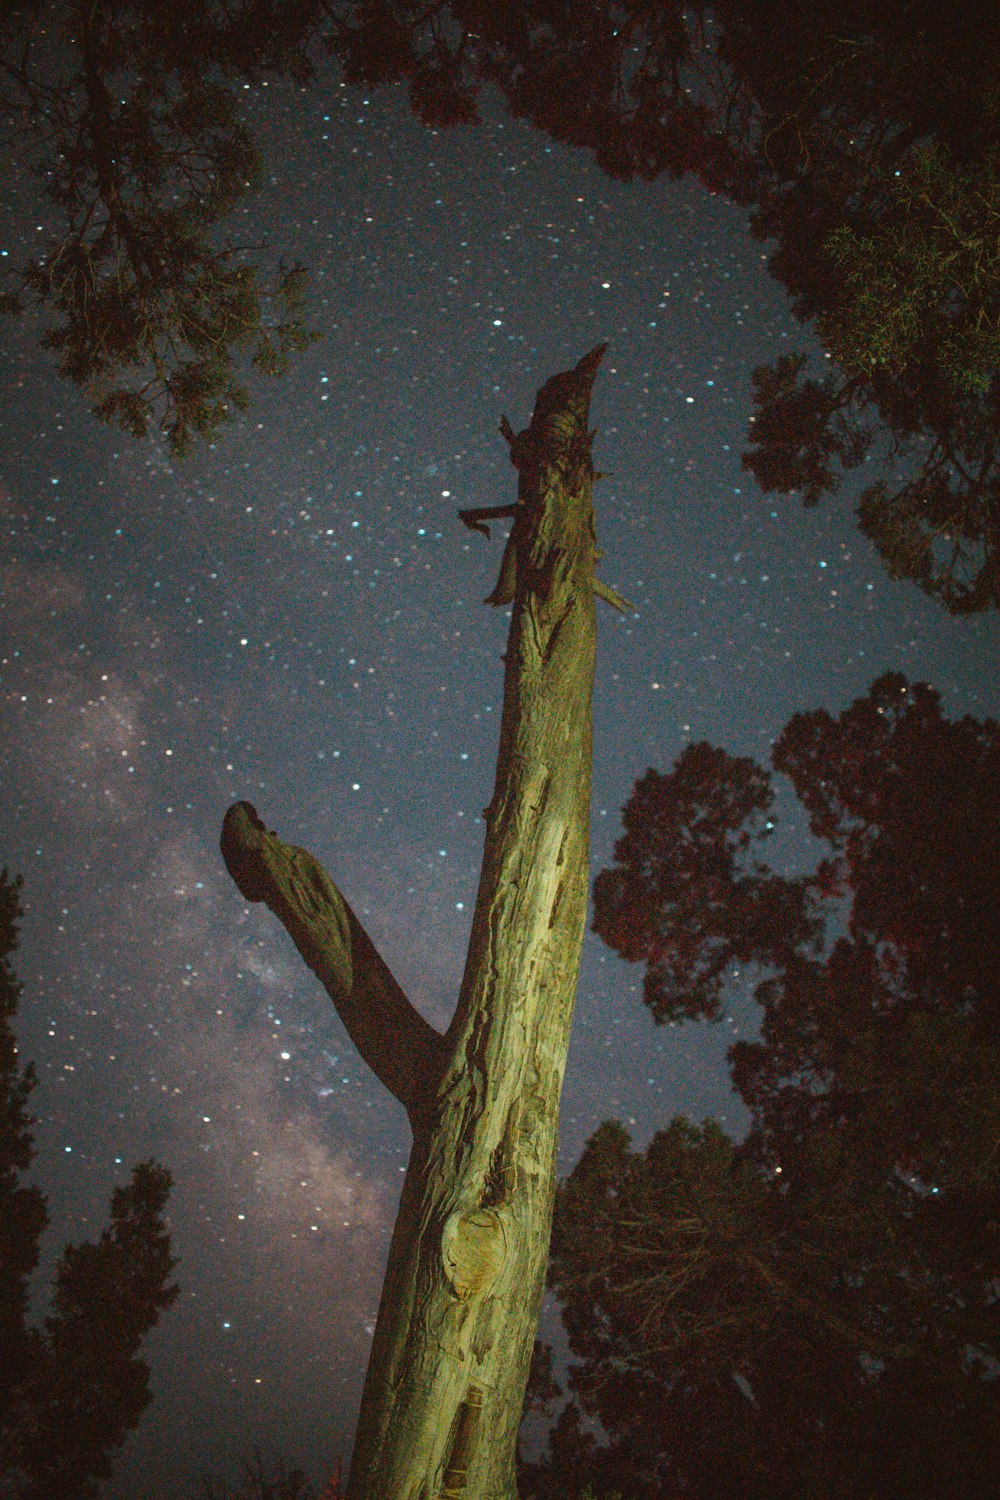 Tronco de árbol marrón durante la noche